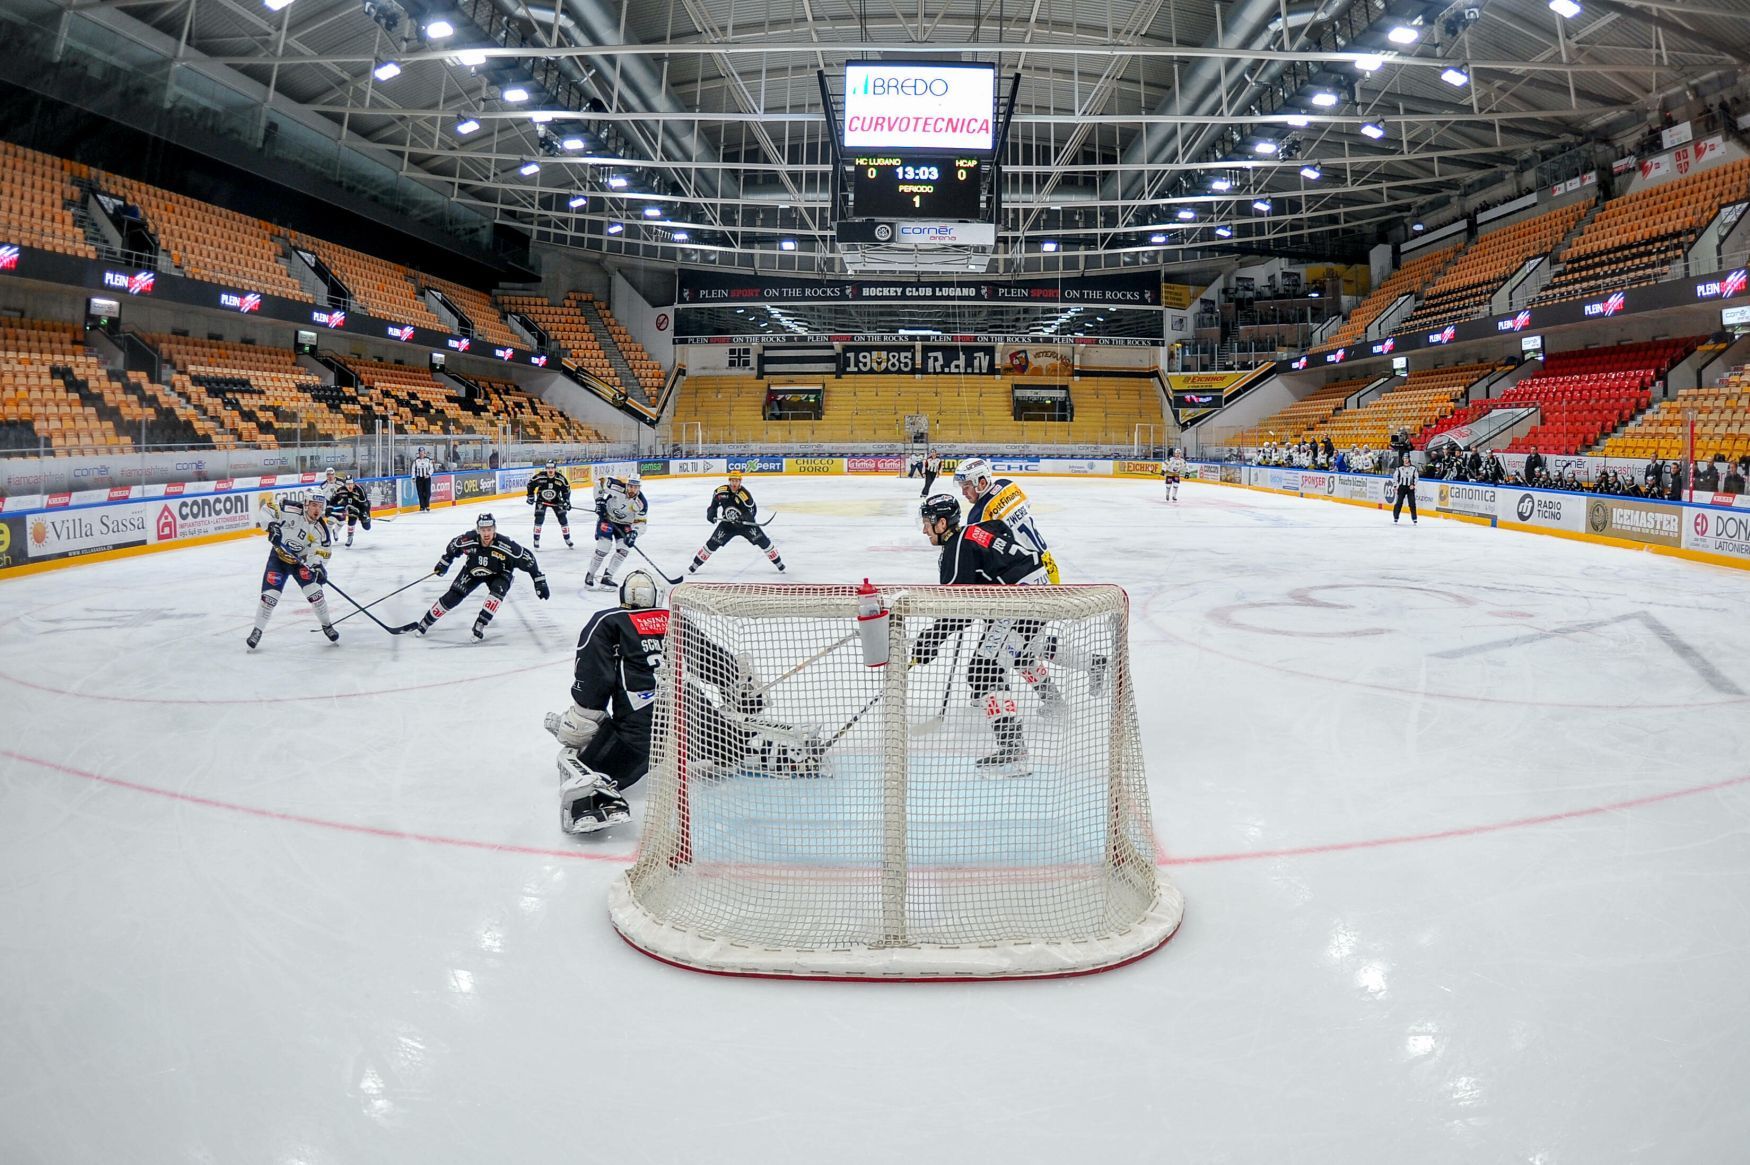 hokej, švýcarská liga 2019/2020, Lugano - Ambri-Piotta, zápas bez diváků kvůli koronaviru